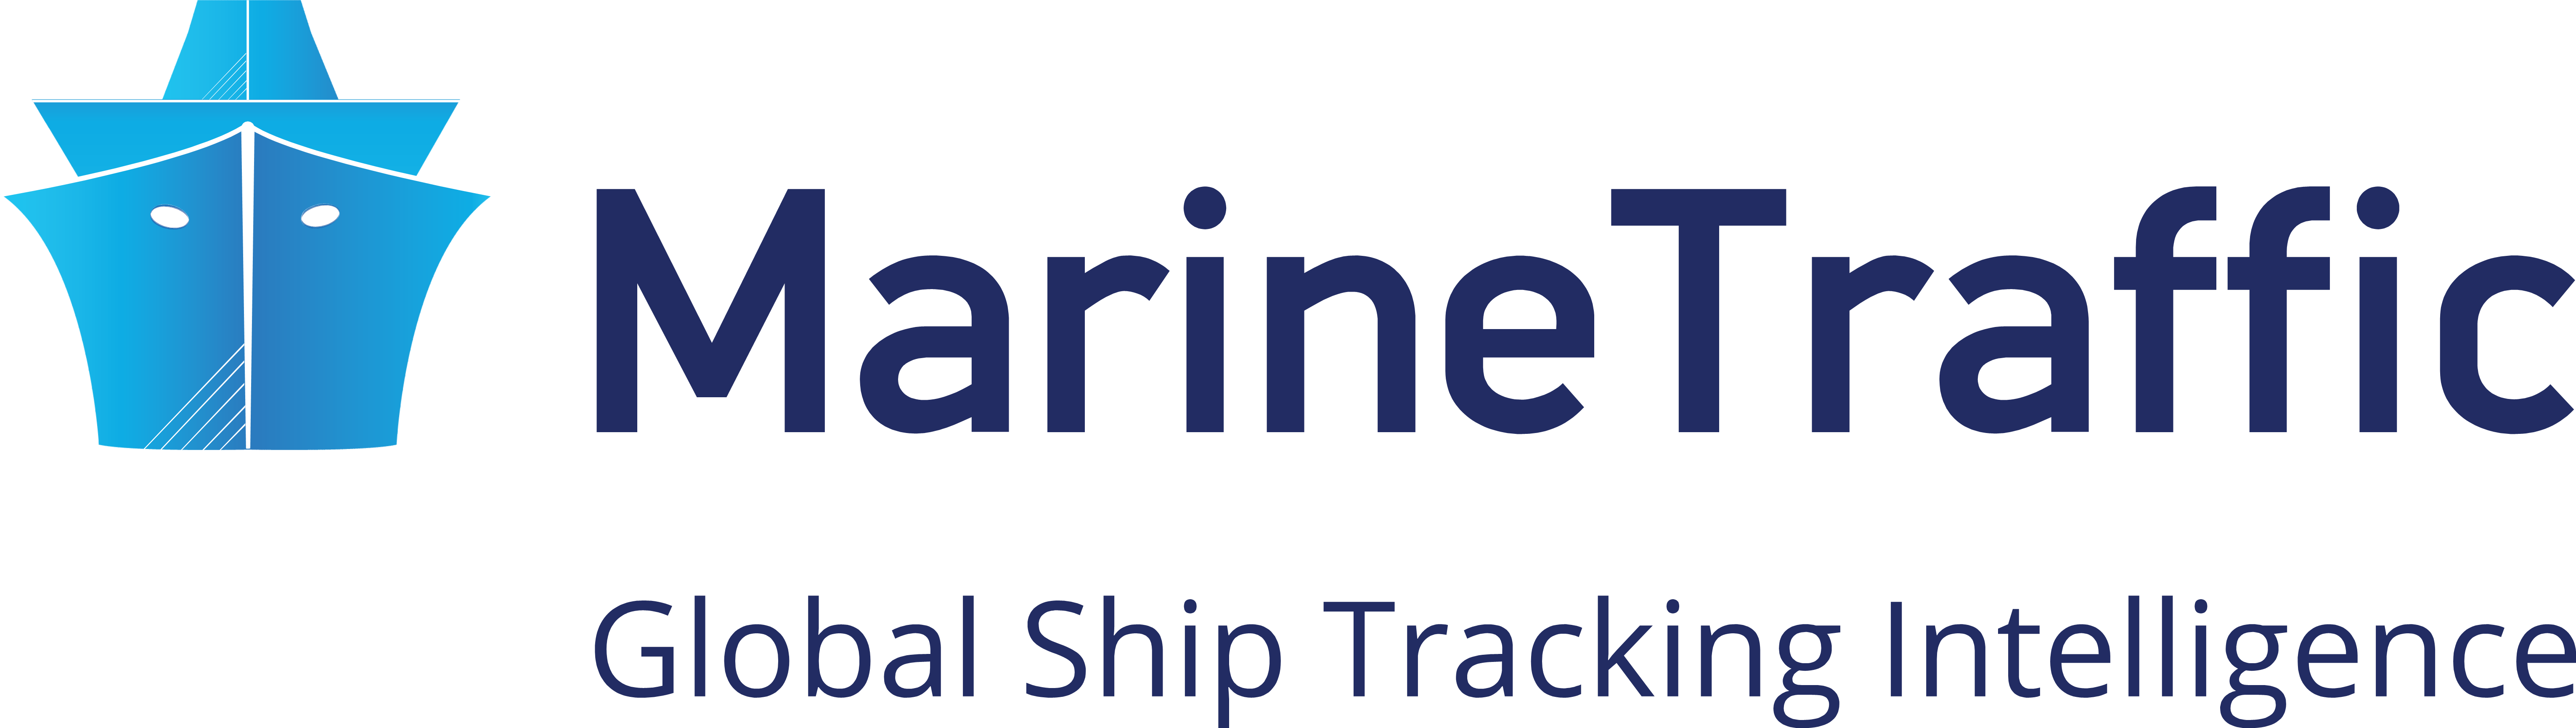 MarineTraffic Operations SA